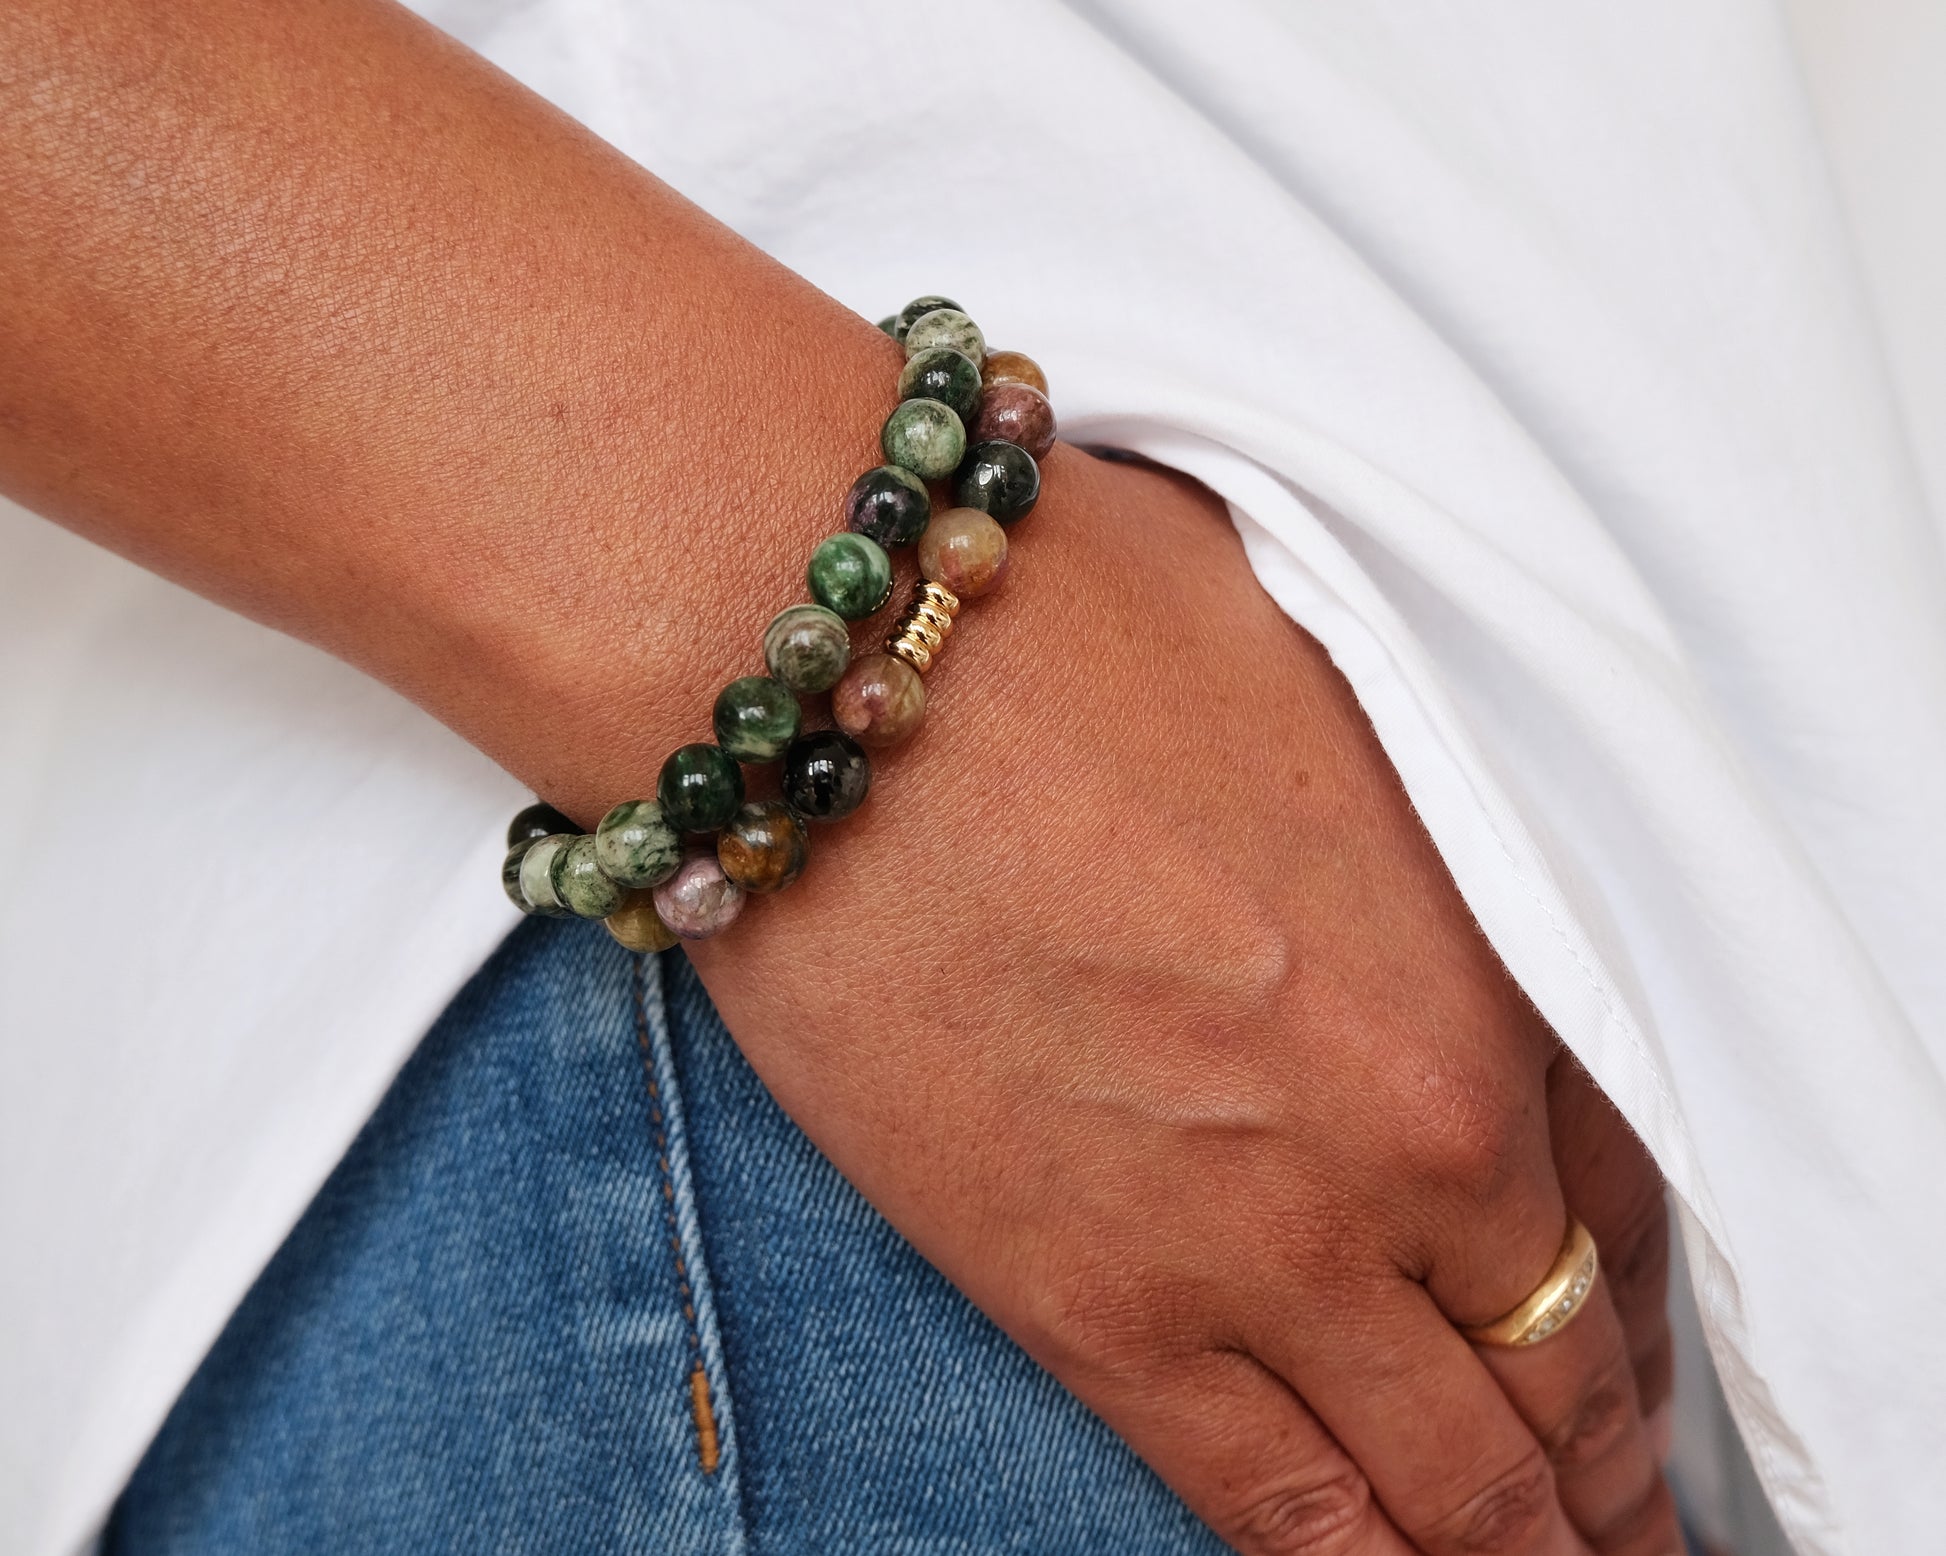 A model wearing a Green Lepidolite bracelet